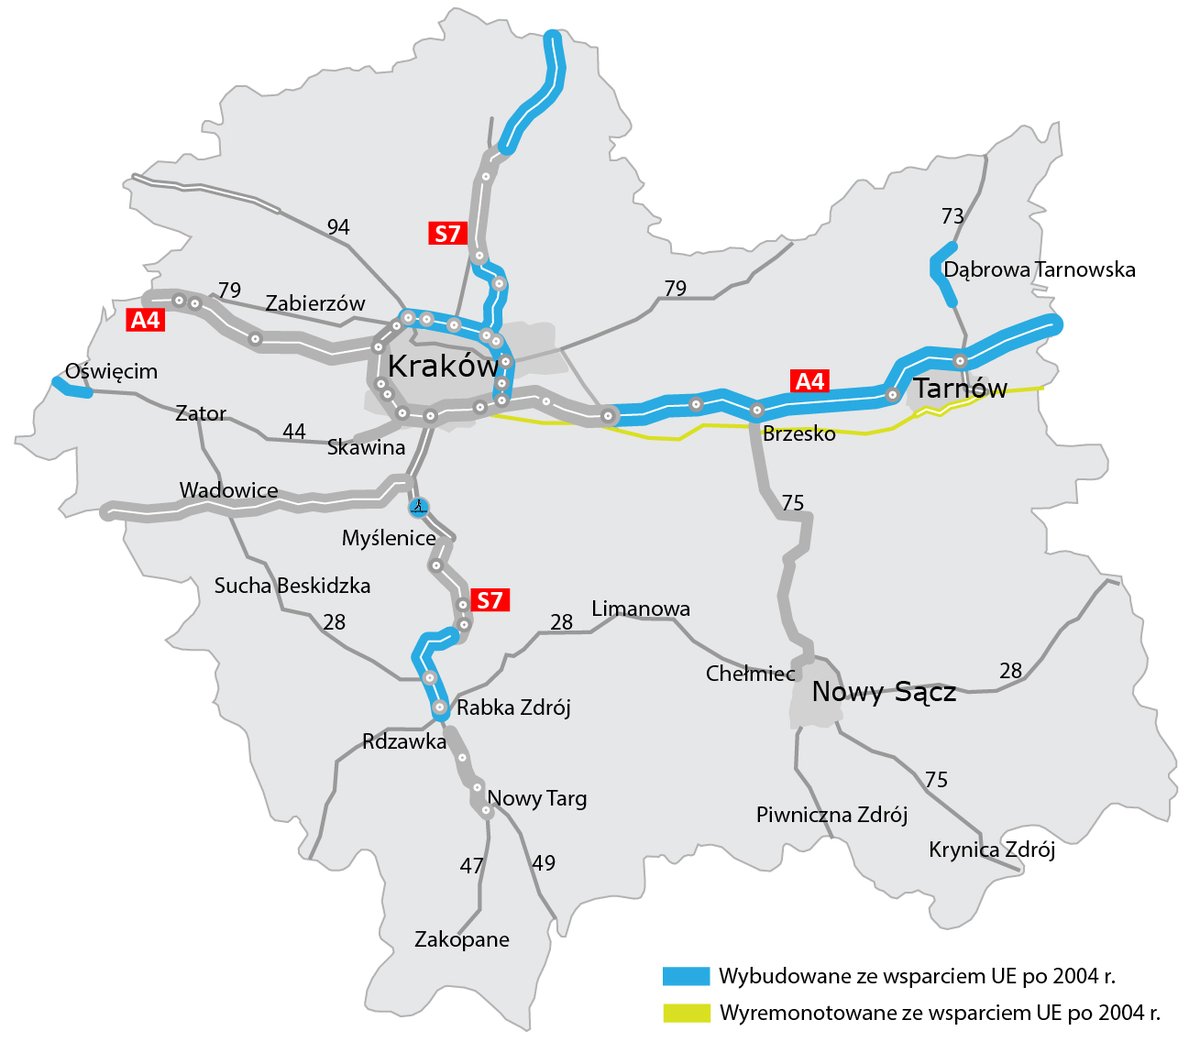 #Małopolska to ważny region na drogowej mapie 🇵🇱 i 🇪🇺
Trasy Północ-Południe #S7 i Wschód-Zachód #A4 są częścią #TEN_T🛣️
Od 20 lat nasza praca wspiera swobodny przepływ ludzi🚗, towarów🚚i usług🚕
@GDDKiA | @MI_GOV_PL | #FunduszeUE | @RegioPoland | #dobrzeRazemwUE | 4⃣,7⃣ mld zł💶